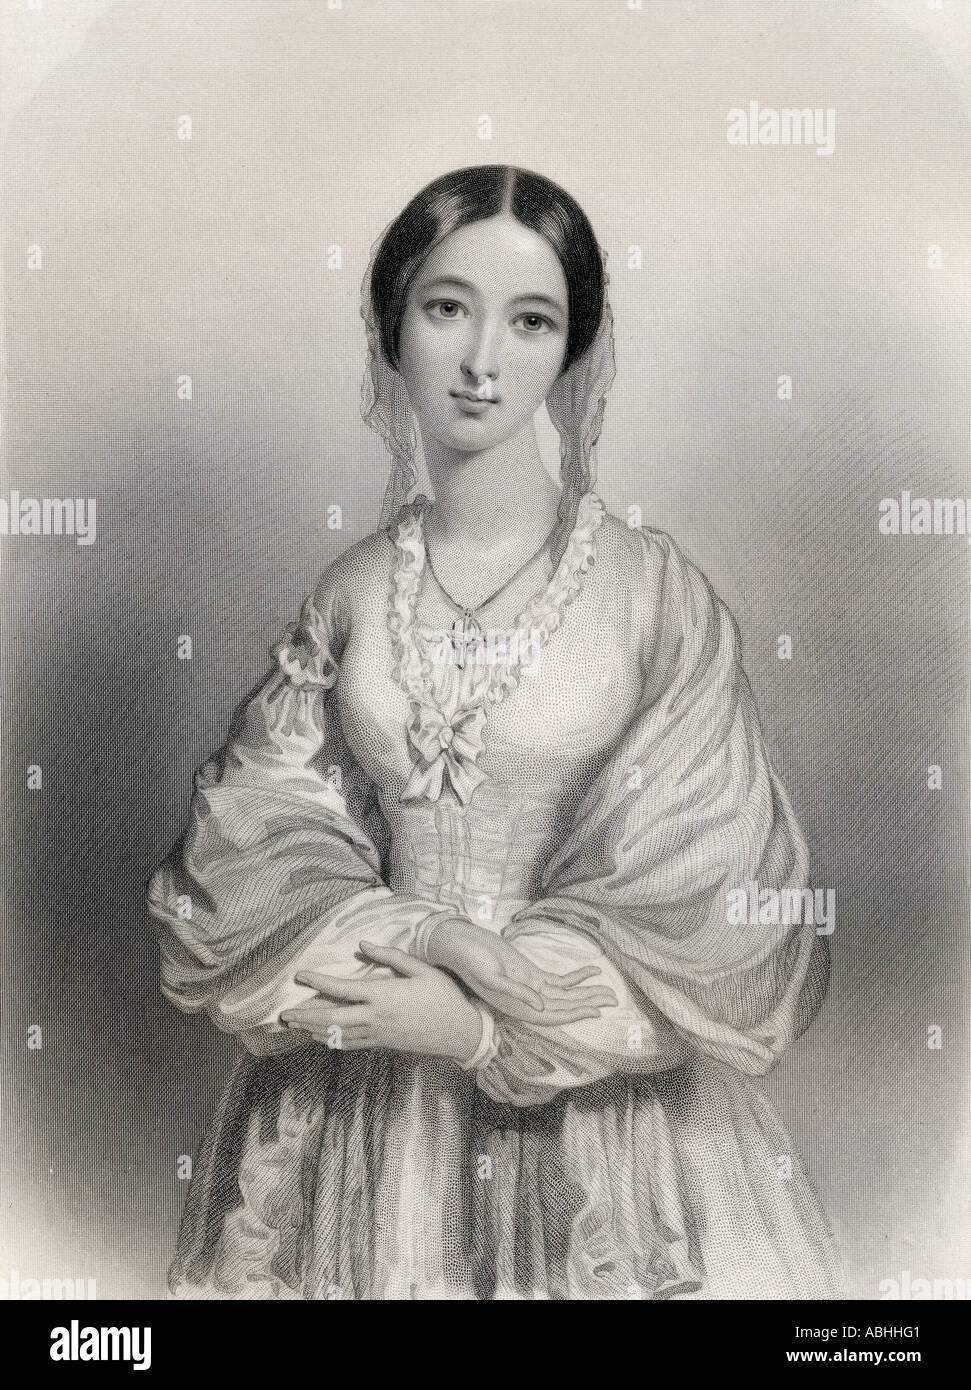 Florence Nightingale, 1820 - 1910. Pioniere dell'assistenza infermieristica e riformatore di metodi sanitari ospedalieri. Foto Stock